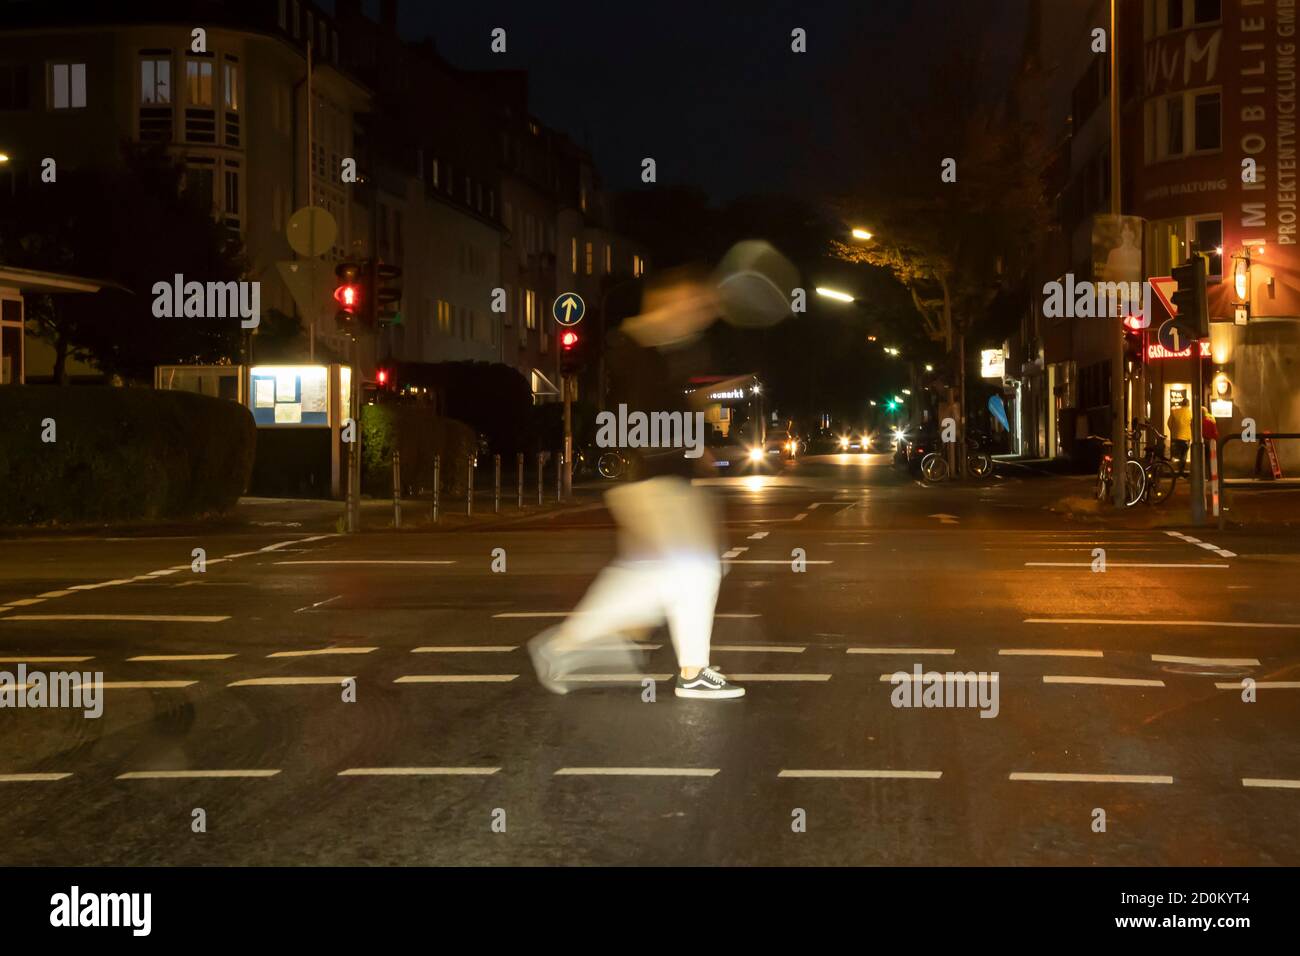 Colonia, NRW, Germania 10 02 2020, scena notturna al bivio di Colonia, un uomo sta attraversando la via pedastrica, sfocatura del movimento Foto Stock